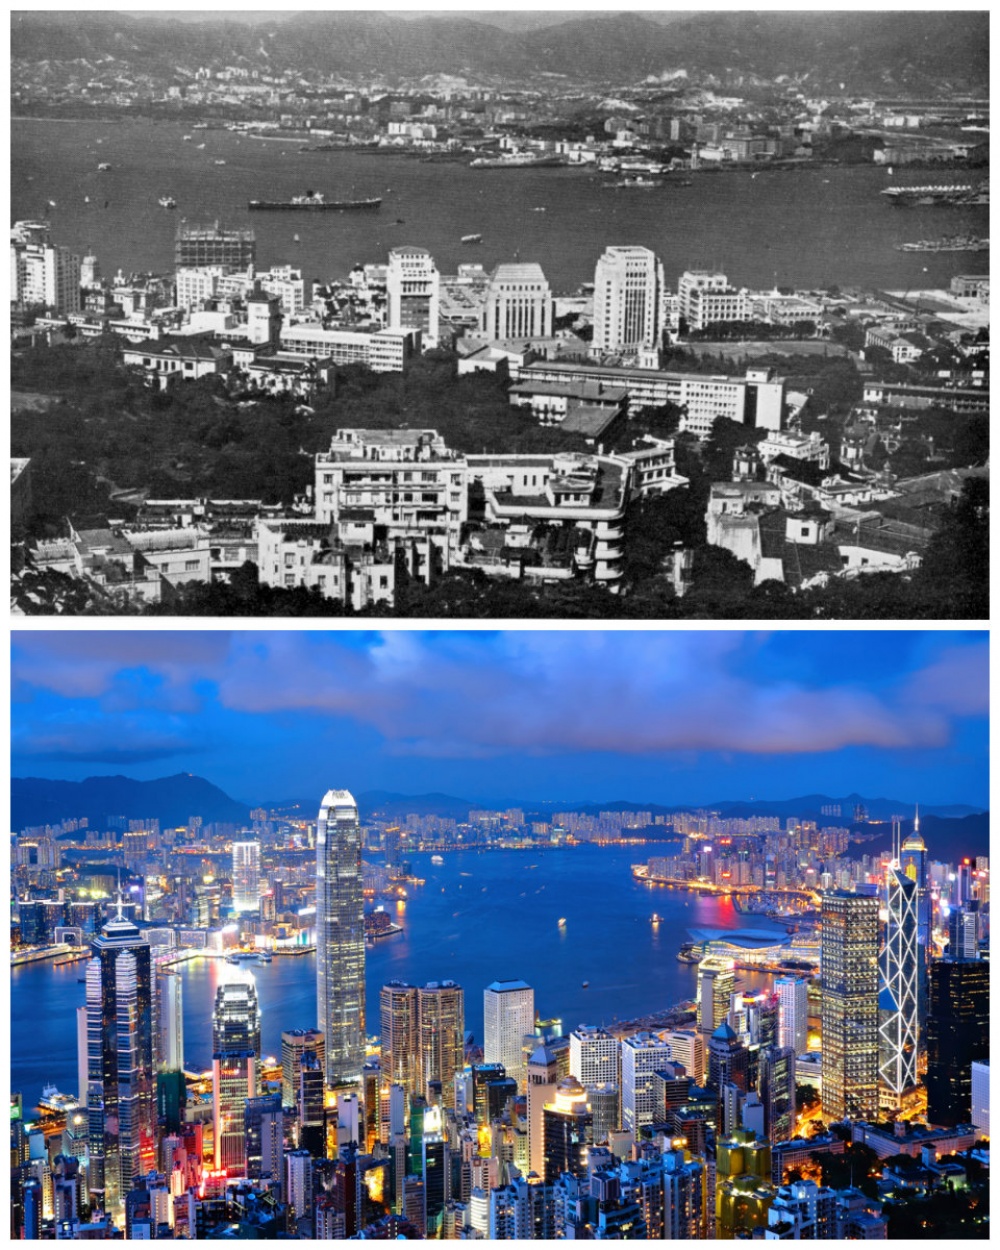 Η εκπληκτική αλλαγή των μεγαλύτερων πόλεων με το πέρασμα του χρόνου - Εικόνα 2